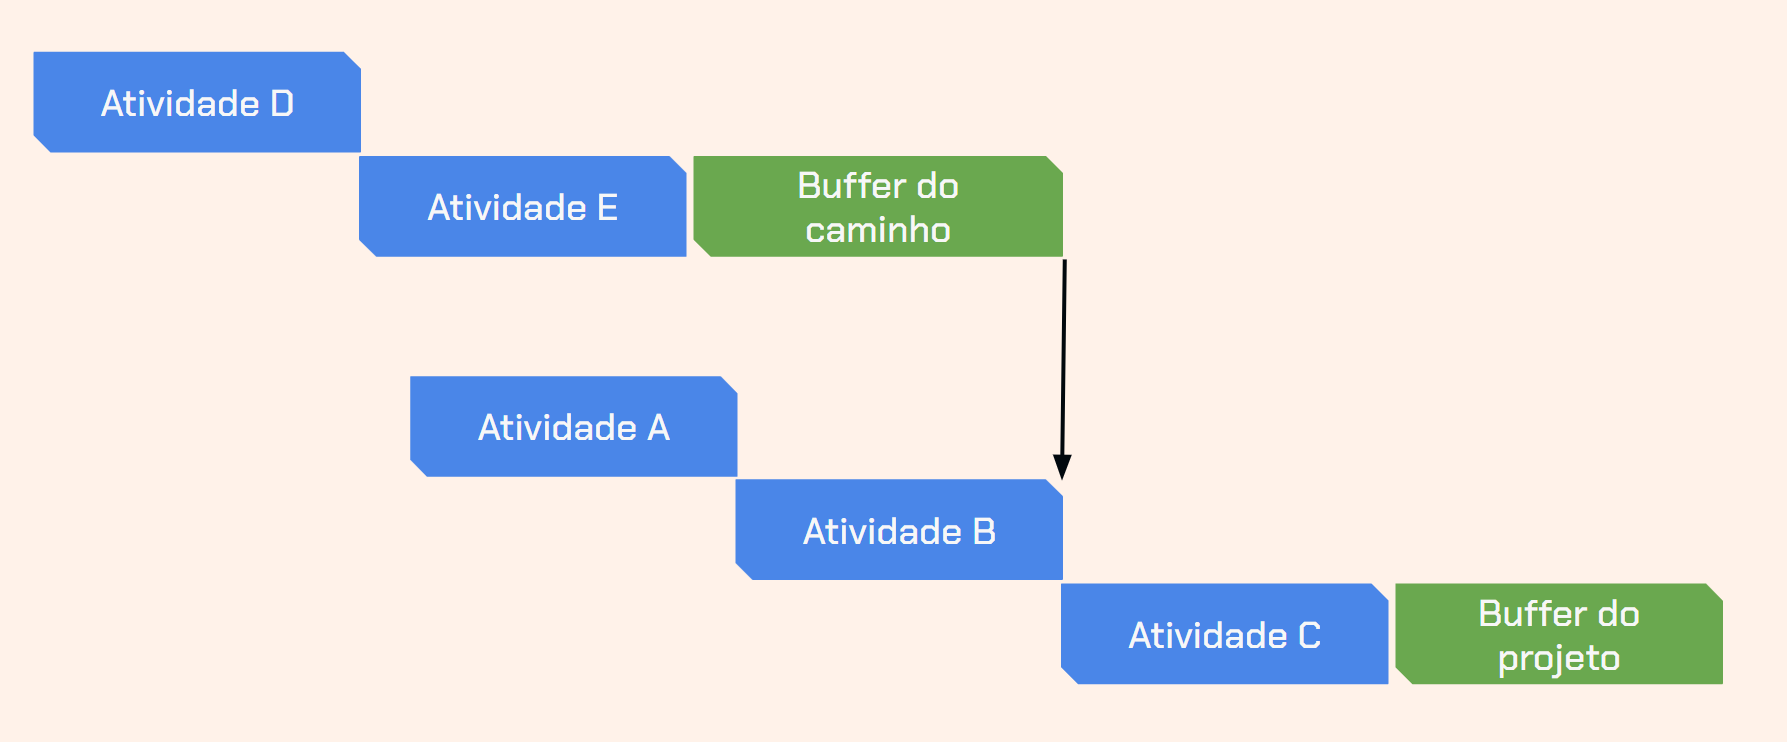 Diagrama de gerenciamento de projetos mostrando cinco atividades (A, B, C, D, E): 'Atividade D' e 'Atividade E' na parte superior à esquerda; e 'Atividade A', 'Atividade B' e 'Atividade C' na parte inferior à direita. Há dois buffers de gerenciamento de tempo indicados: um buffer do caminho após 'Atividade E' e conectado a 'Atividade B'; e um buffer do projeto após 'Atividade C'. As atividades são representadas por retângulos azuis e os buffers por retângulos verdes.